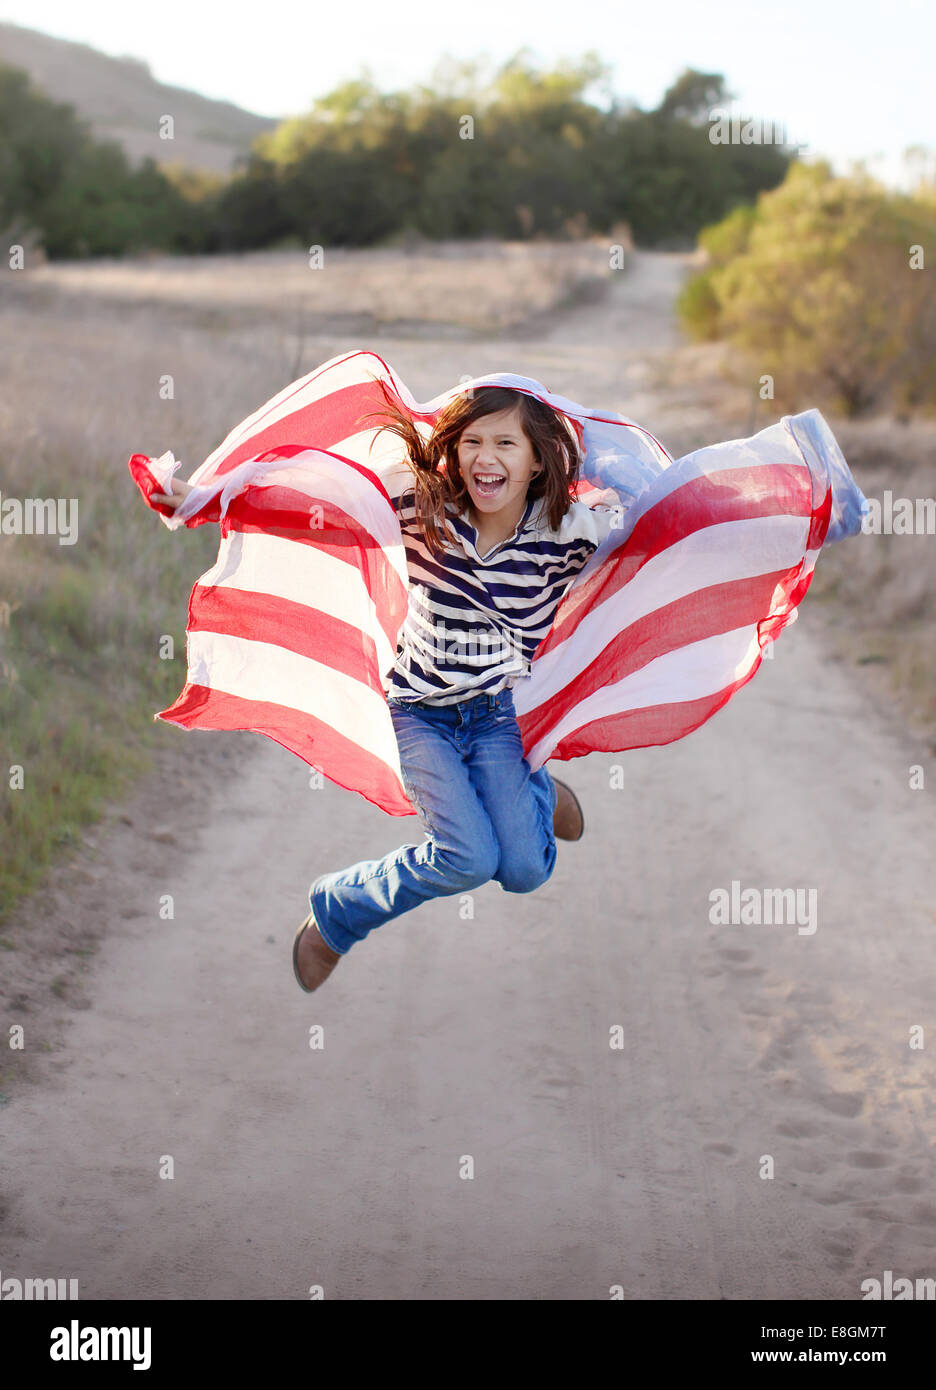 Chica saltando en el aire sosteniendo la bandera americana Foto de stock